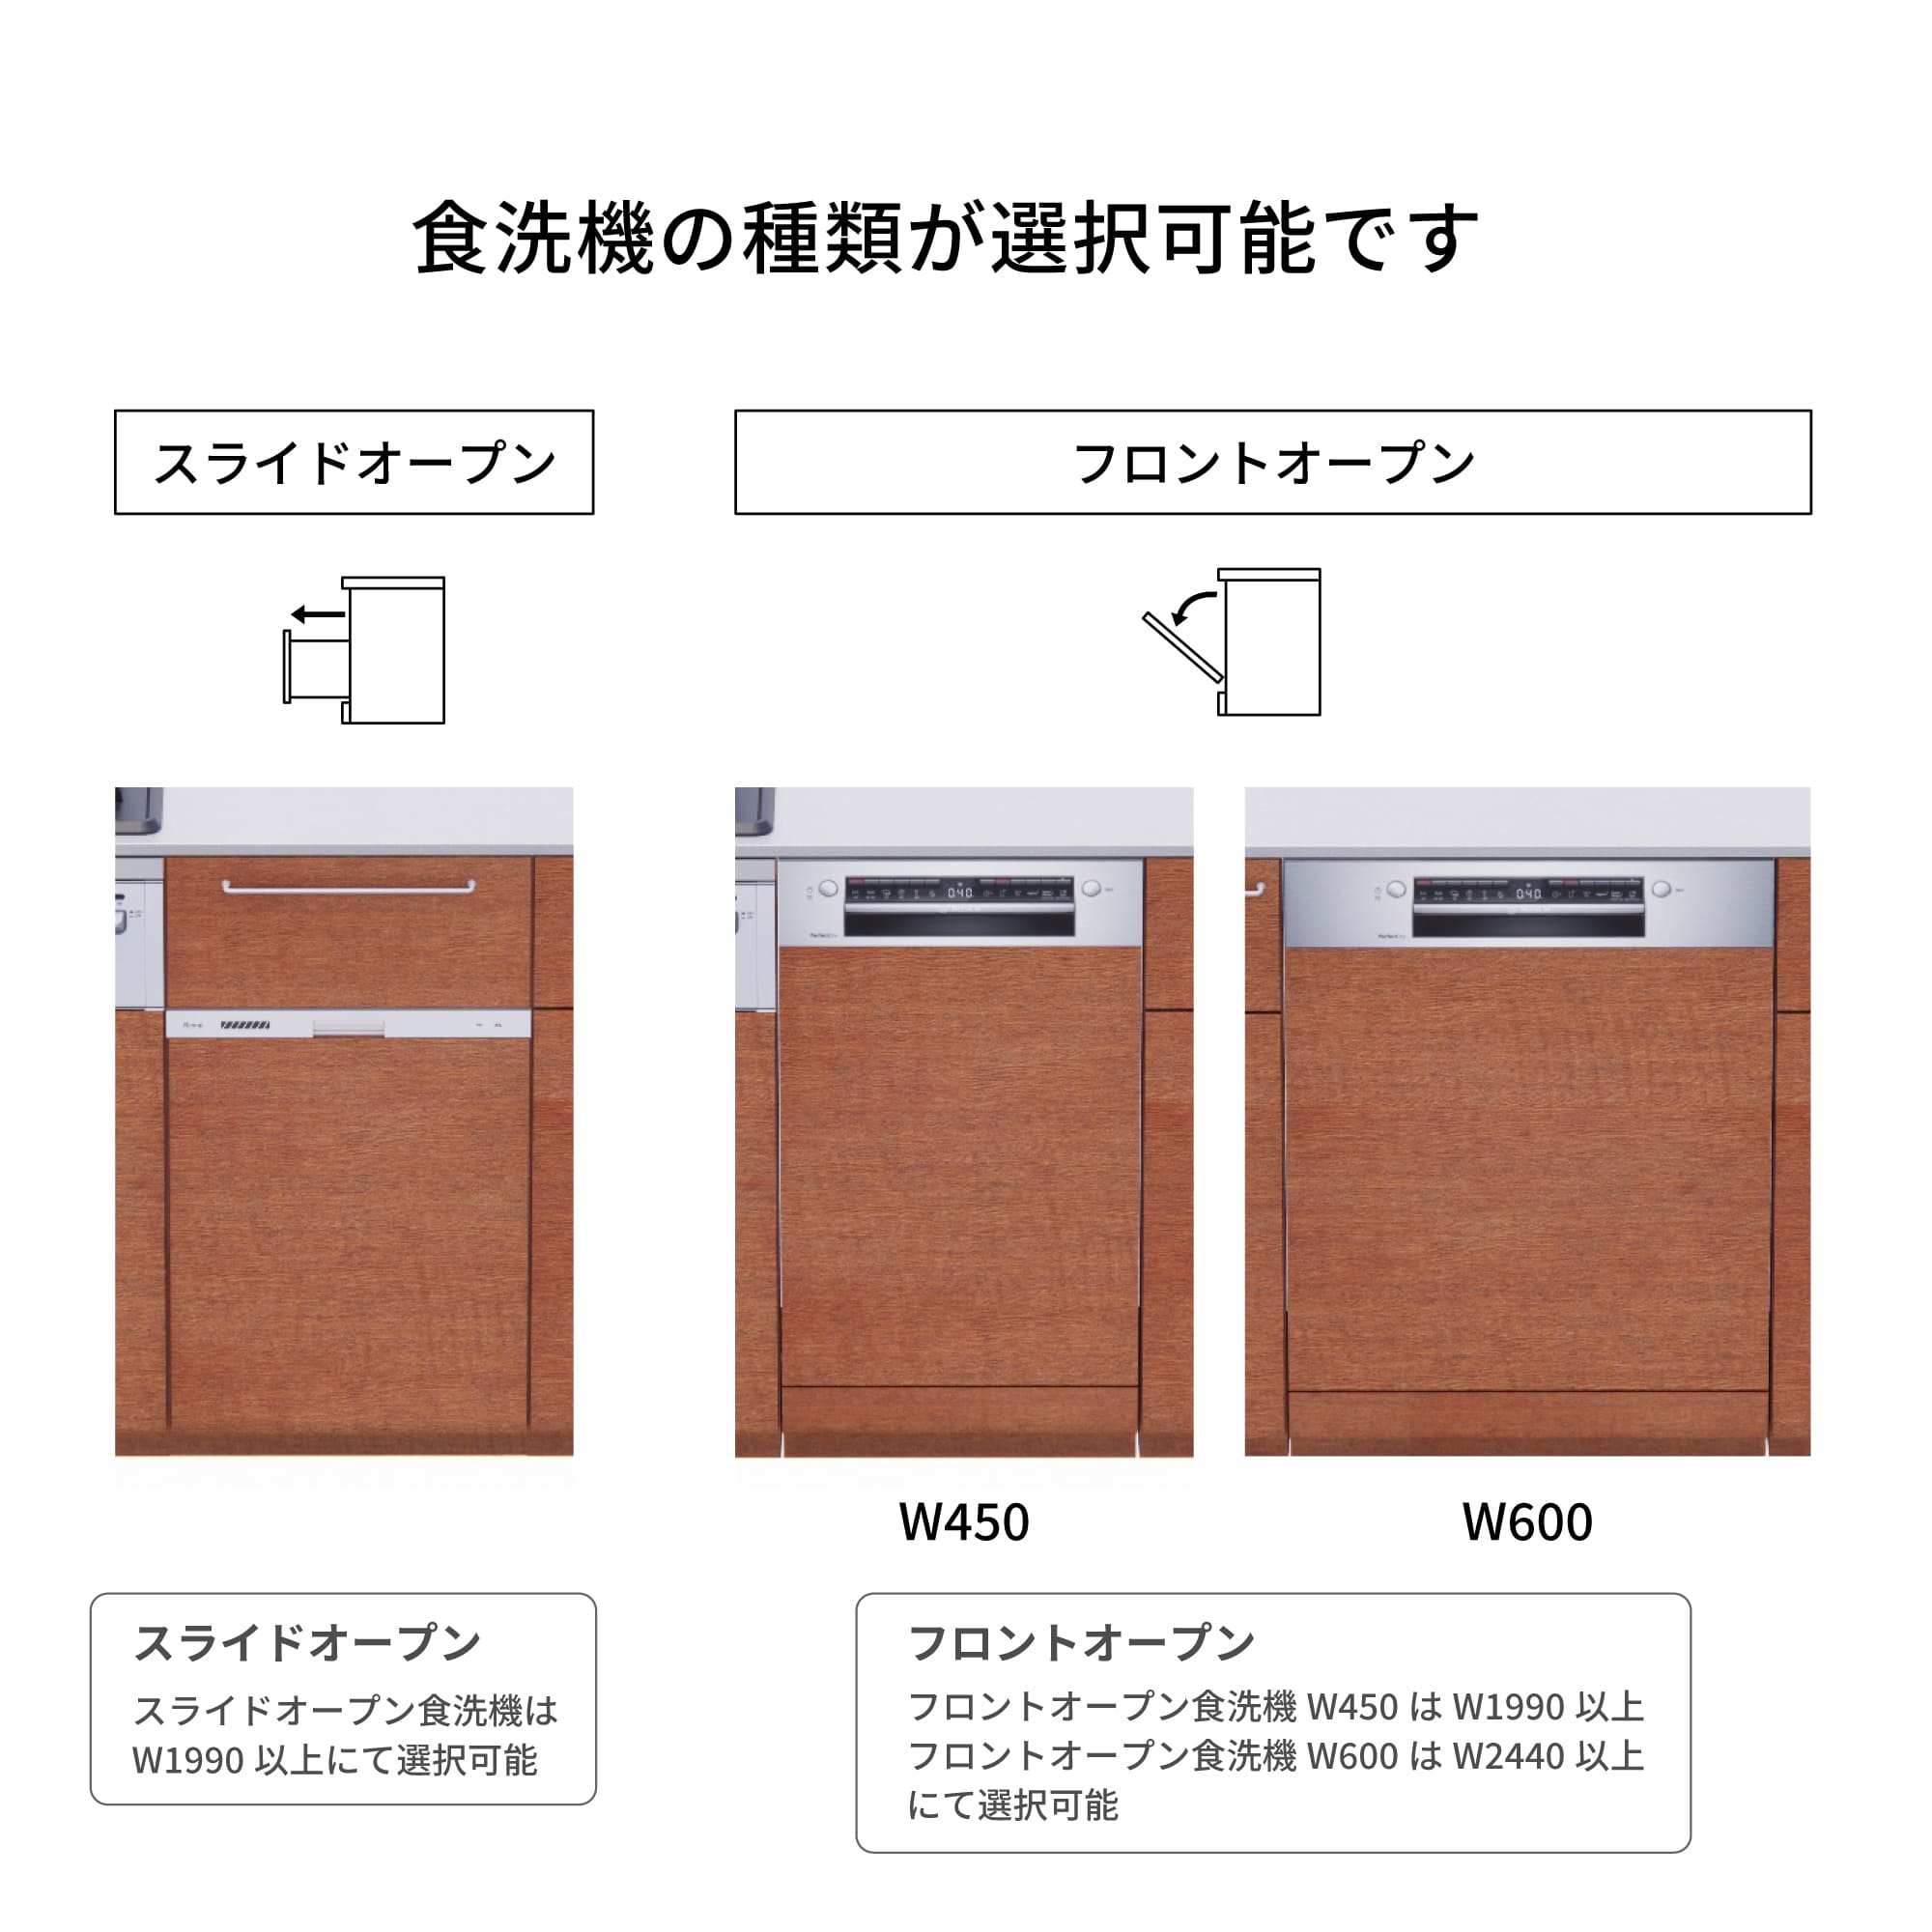 木製システムキッチン 壁付け型 W2440～2740・コンロあり / オーブンあり / 食洗機あり KB-KC022-28-G183 食洗機が選択できます